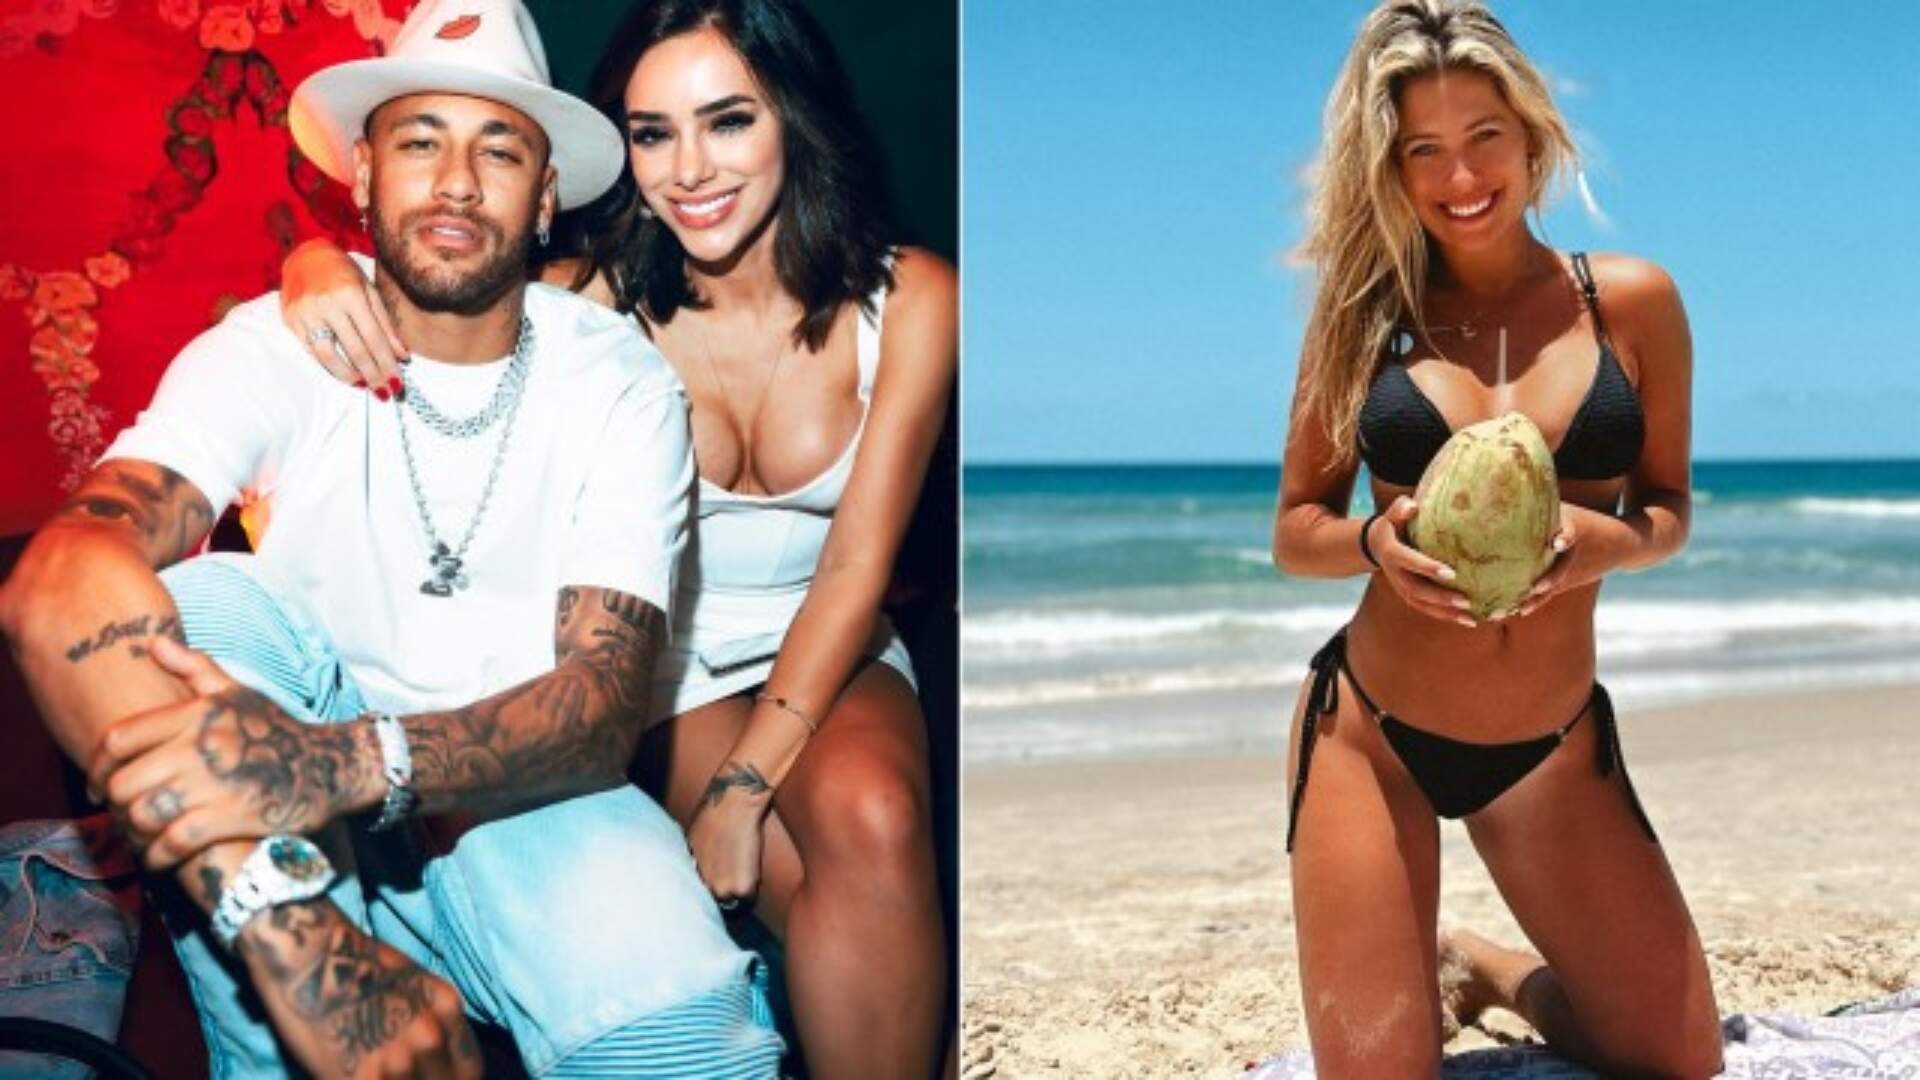 Solteiro? Após boatos de affair entre Neymar e modelo brasileira, jogador se pronuncia: “Caos” - Metropolitana FM